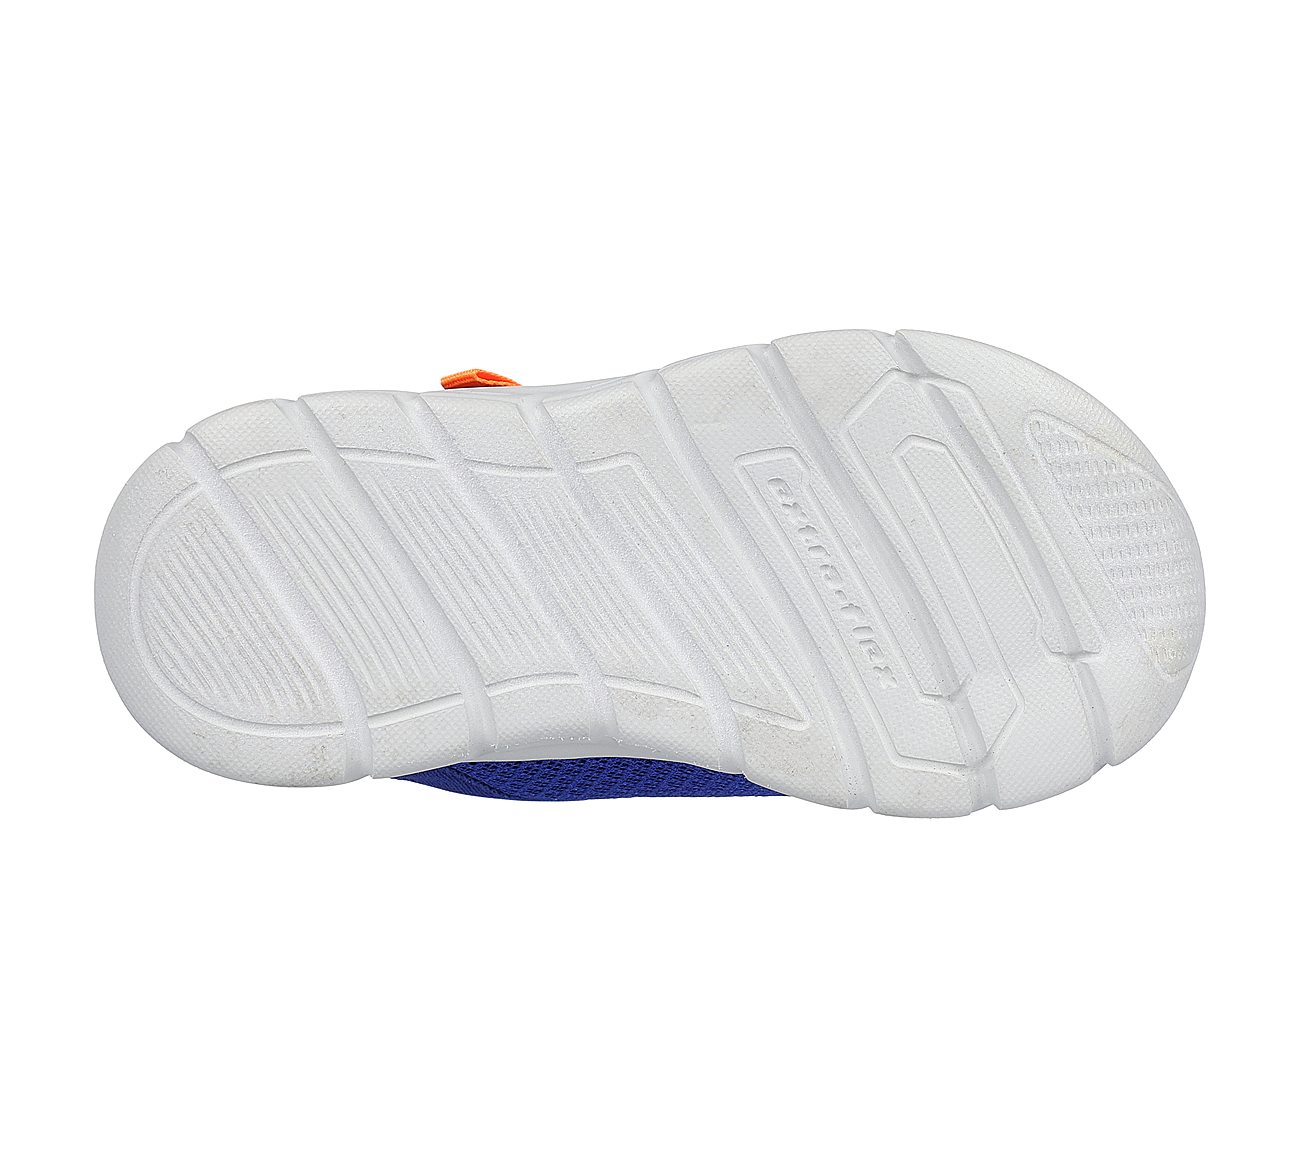 COMFY FLEX - RUZO, BLUE/ORANGE Footwear Bottom View